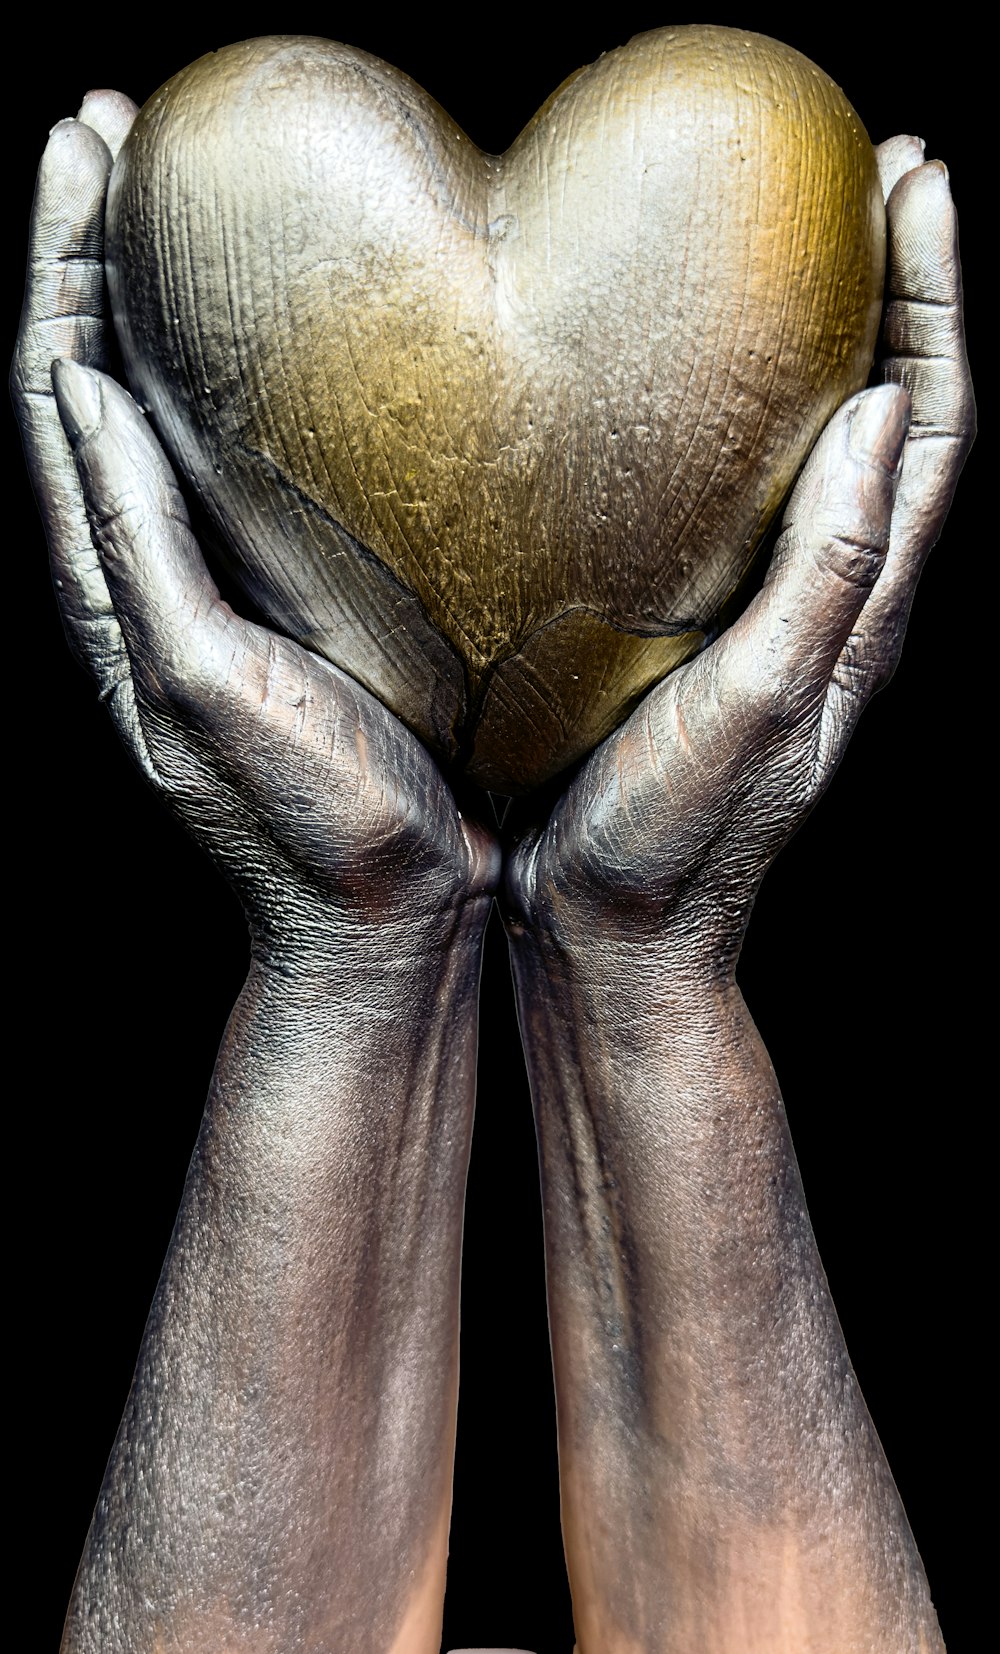 a pair of hands holding a golden heart